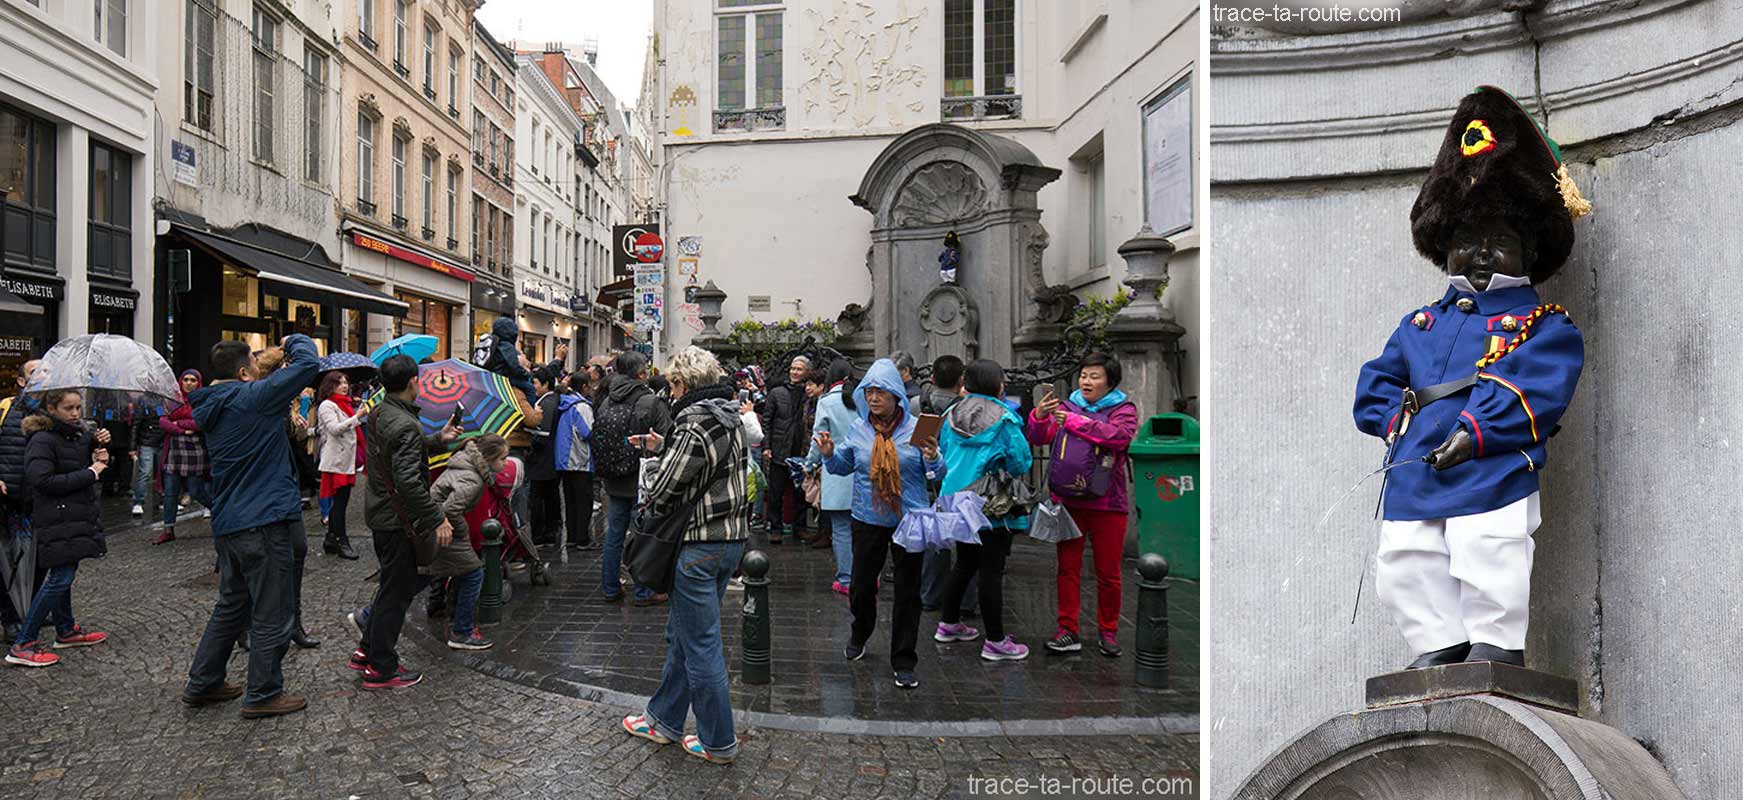 La statue Manneken Pis à Bruxelles, Belgique (déguisé avec costume) - Brussels, Belgium